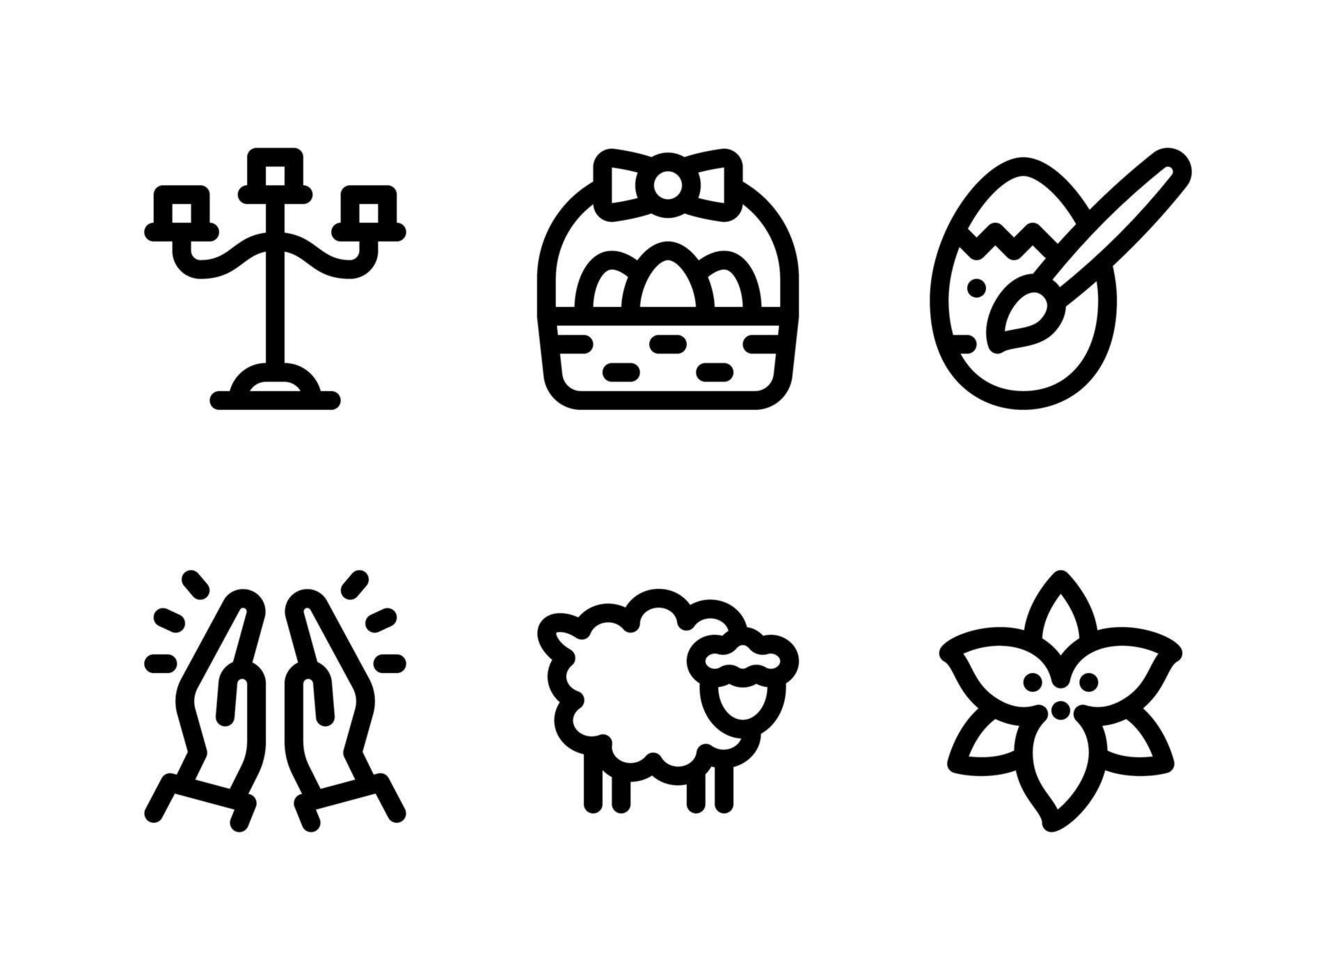 simple conjunto de iconos sólidos vectoriales relacionados con la pascua. contiene íconos como candelabros, canasta de pascua, huevos pintados, rezando y más. vector